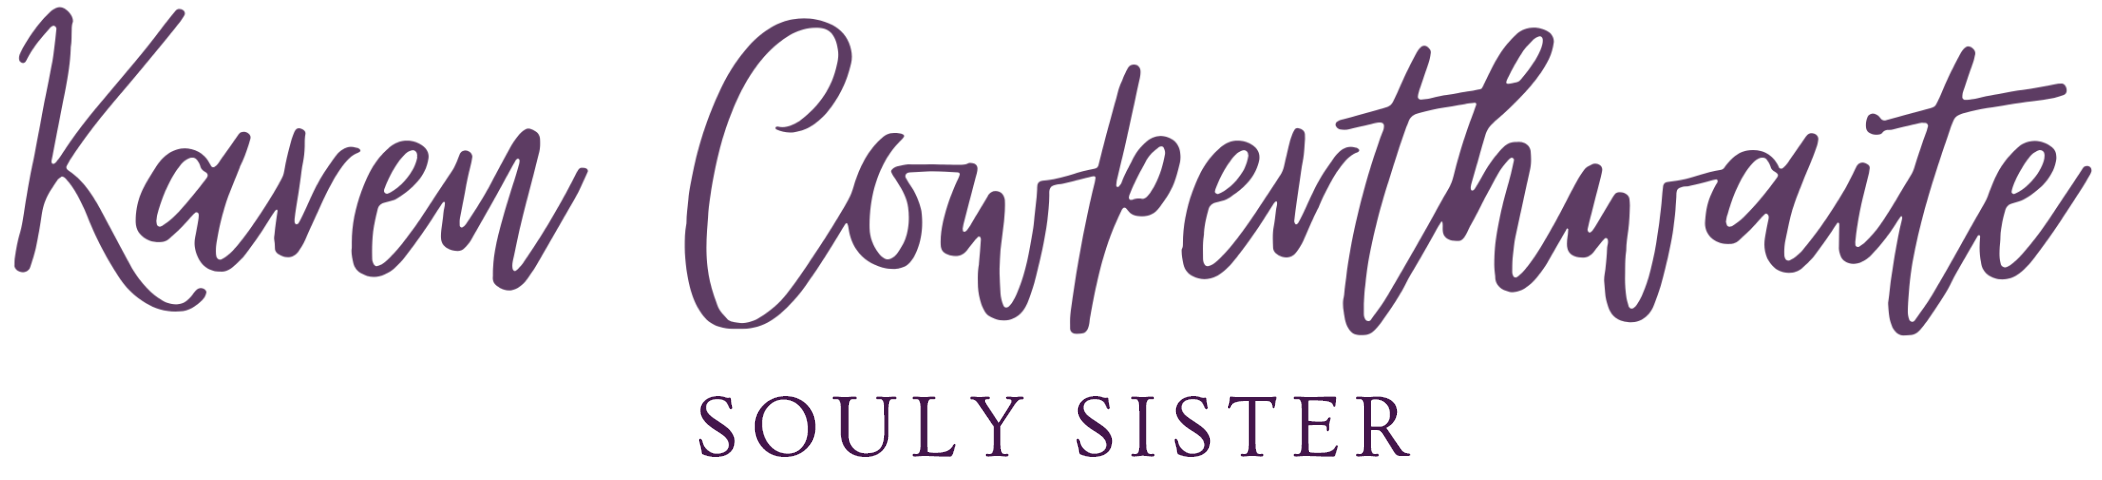 souly sister karen cowperthwaite logo